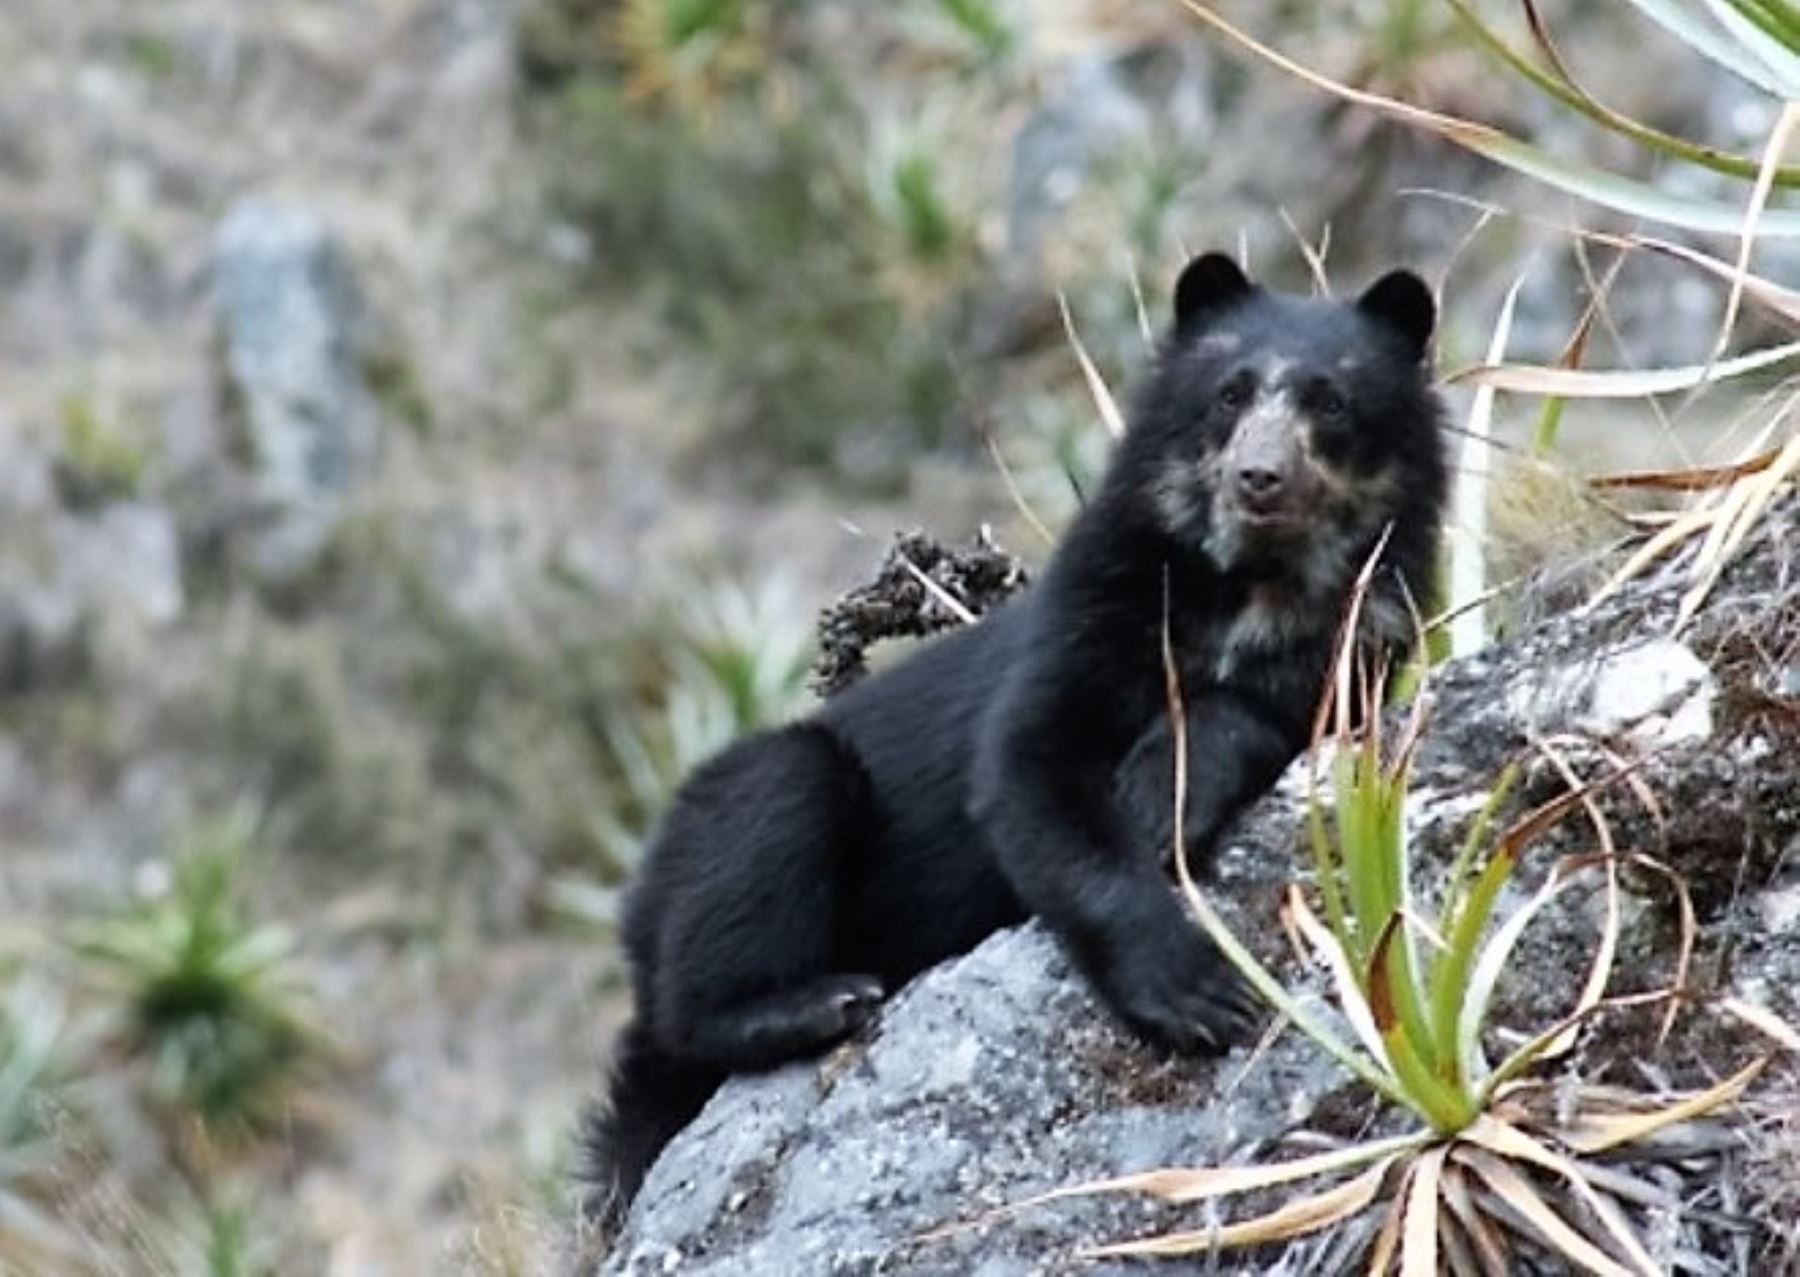 Sernanp capta imágenes de oso andino en Santuario Nacional de Megantoni, en Cusco. ANDINA/Archivo